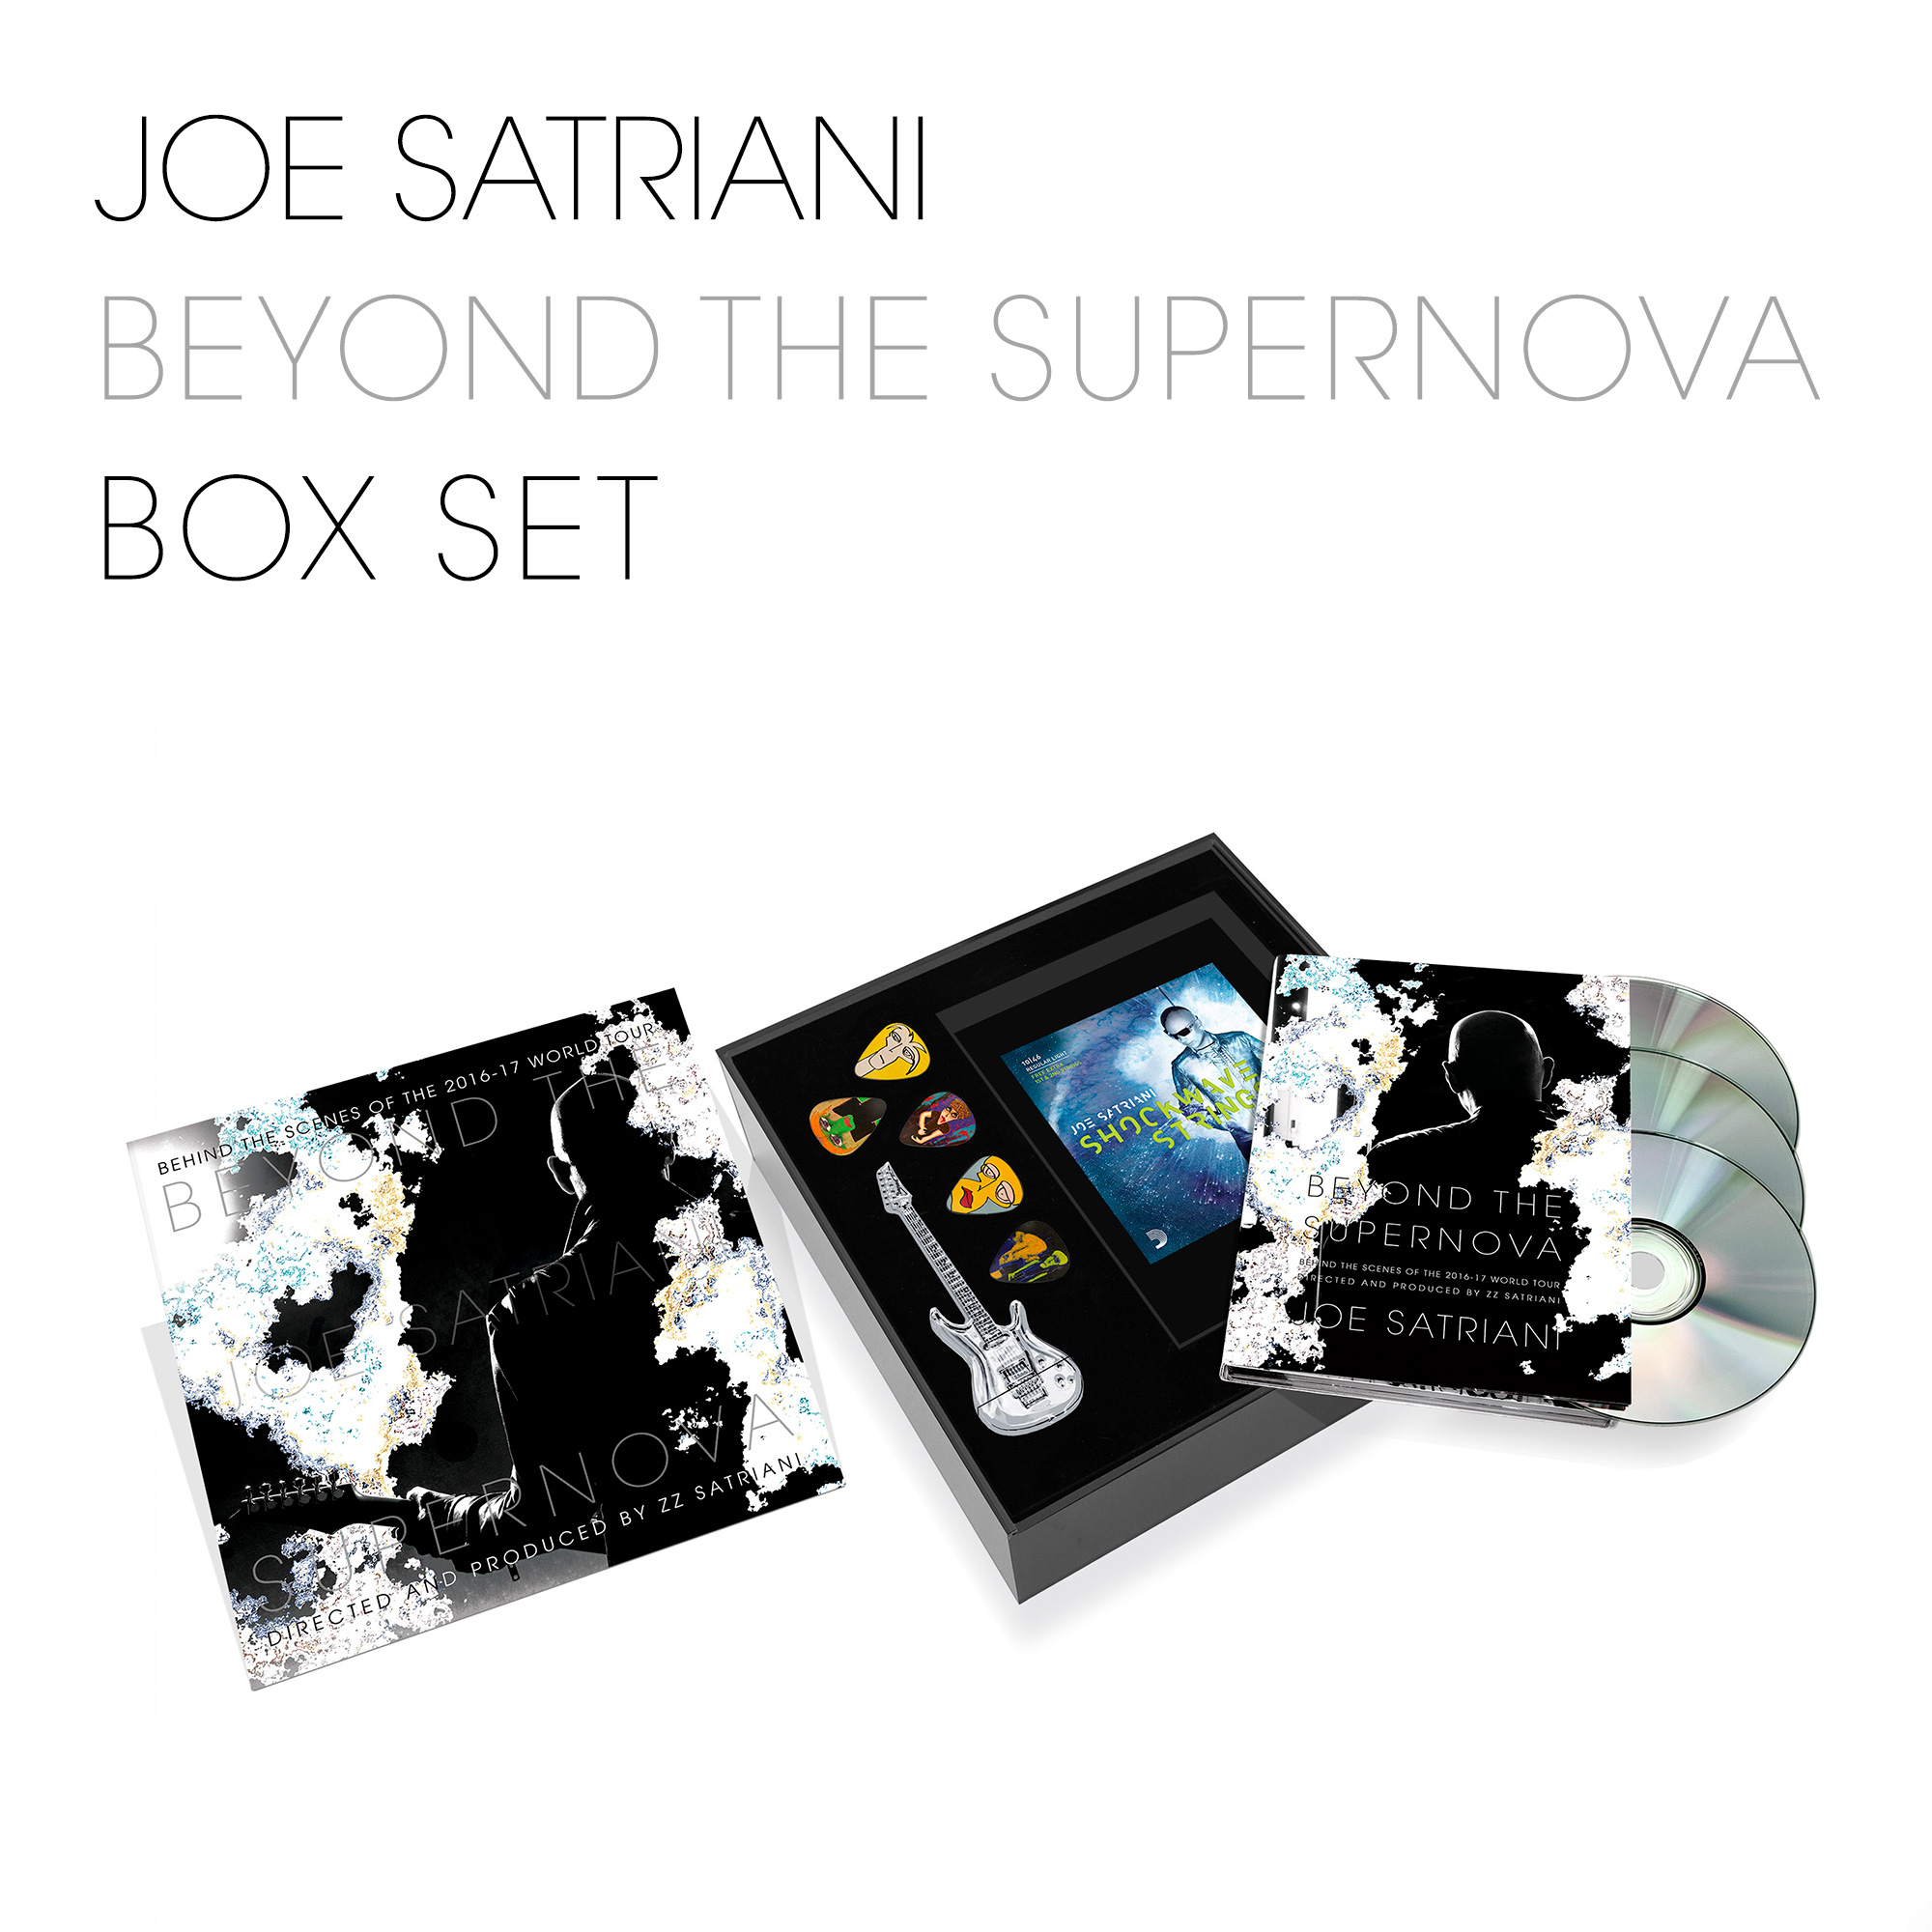 Beyond The Supernova Box Set